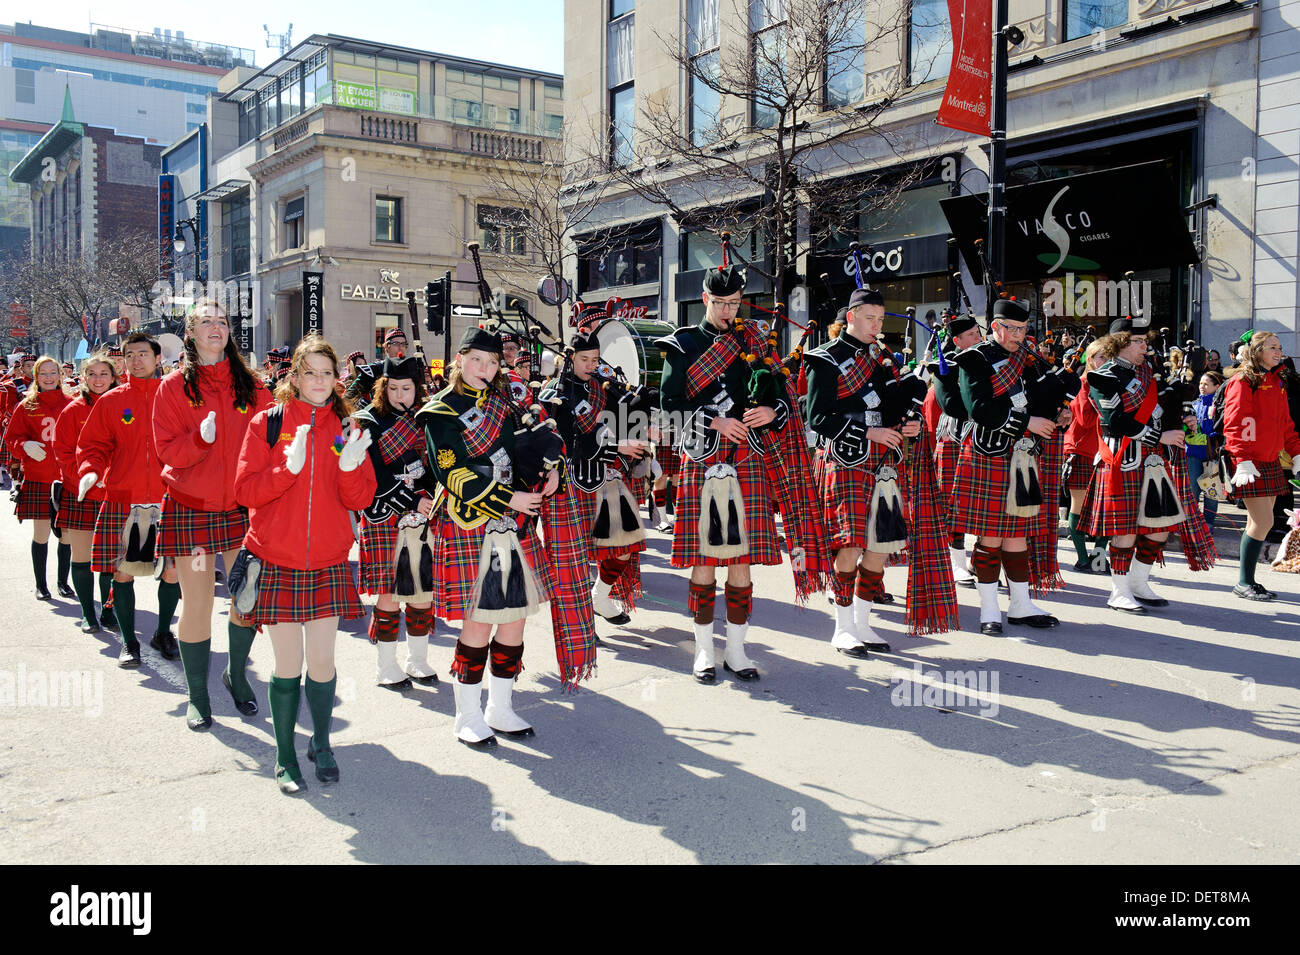 Danseurs écossais et marching band écossais défilent sur la rue Sainte-Catherine à Montréal pendant la parade de la St Patrick. Banque D'Images